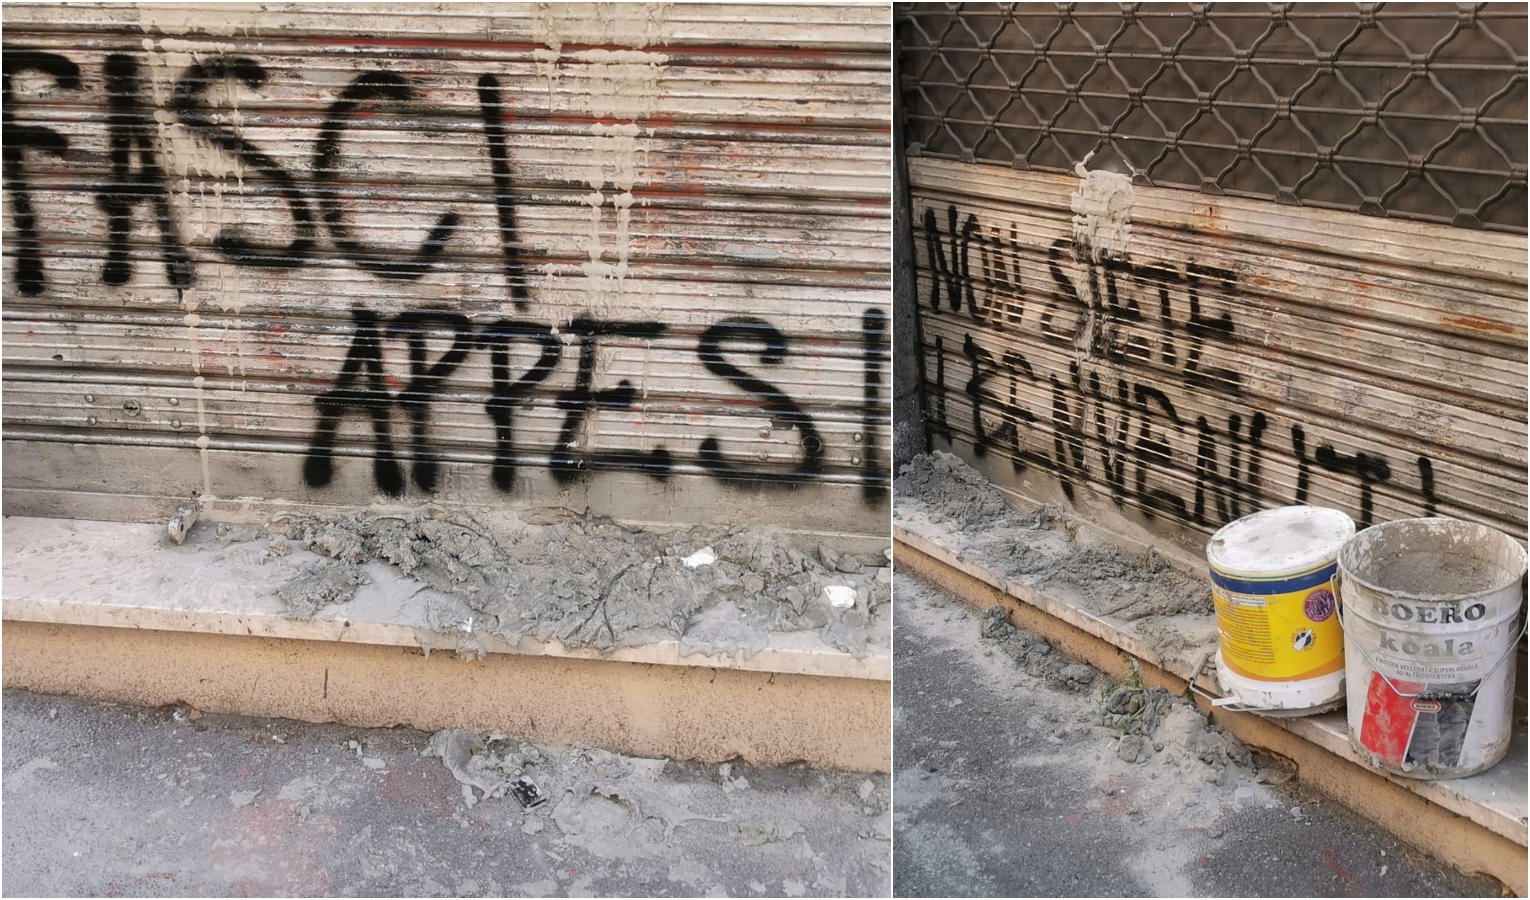 CasaPound, vandalizzata la sede di Genova: bloccata la saracinesca